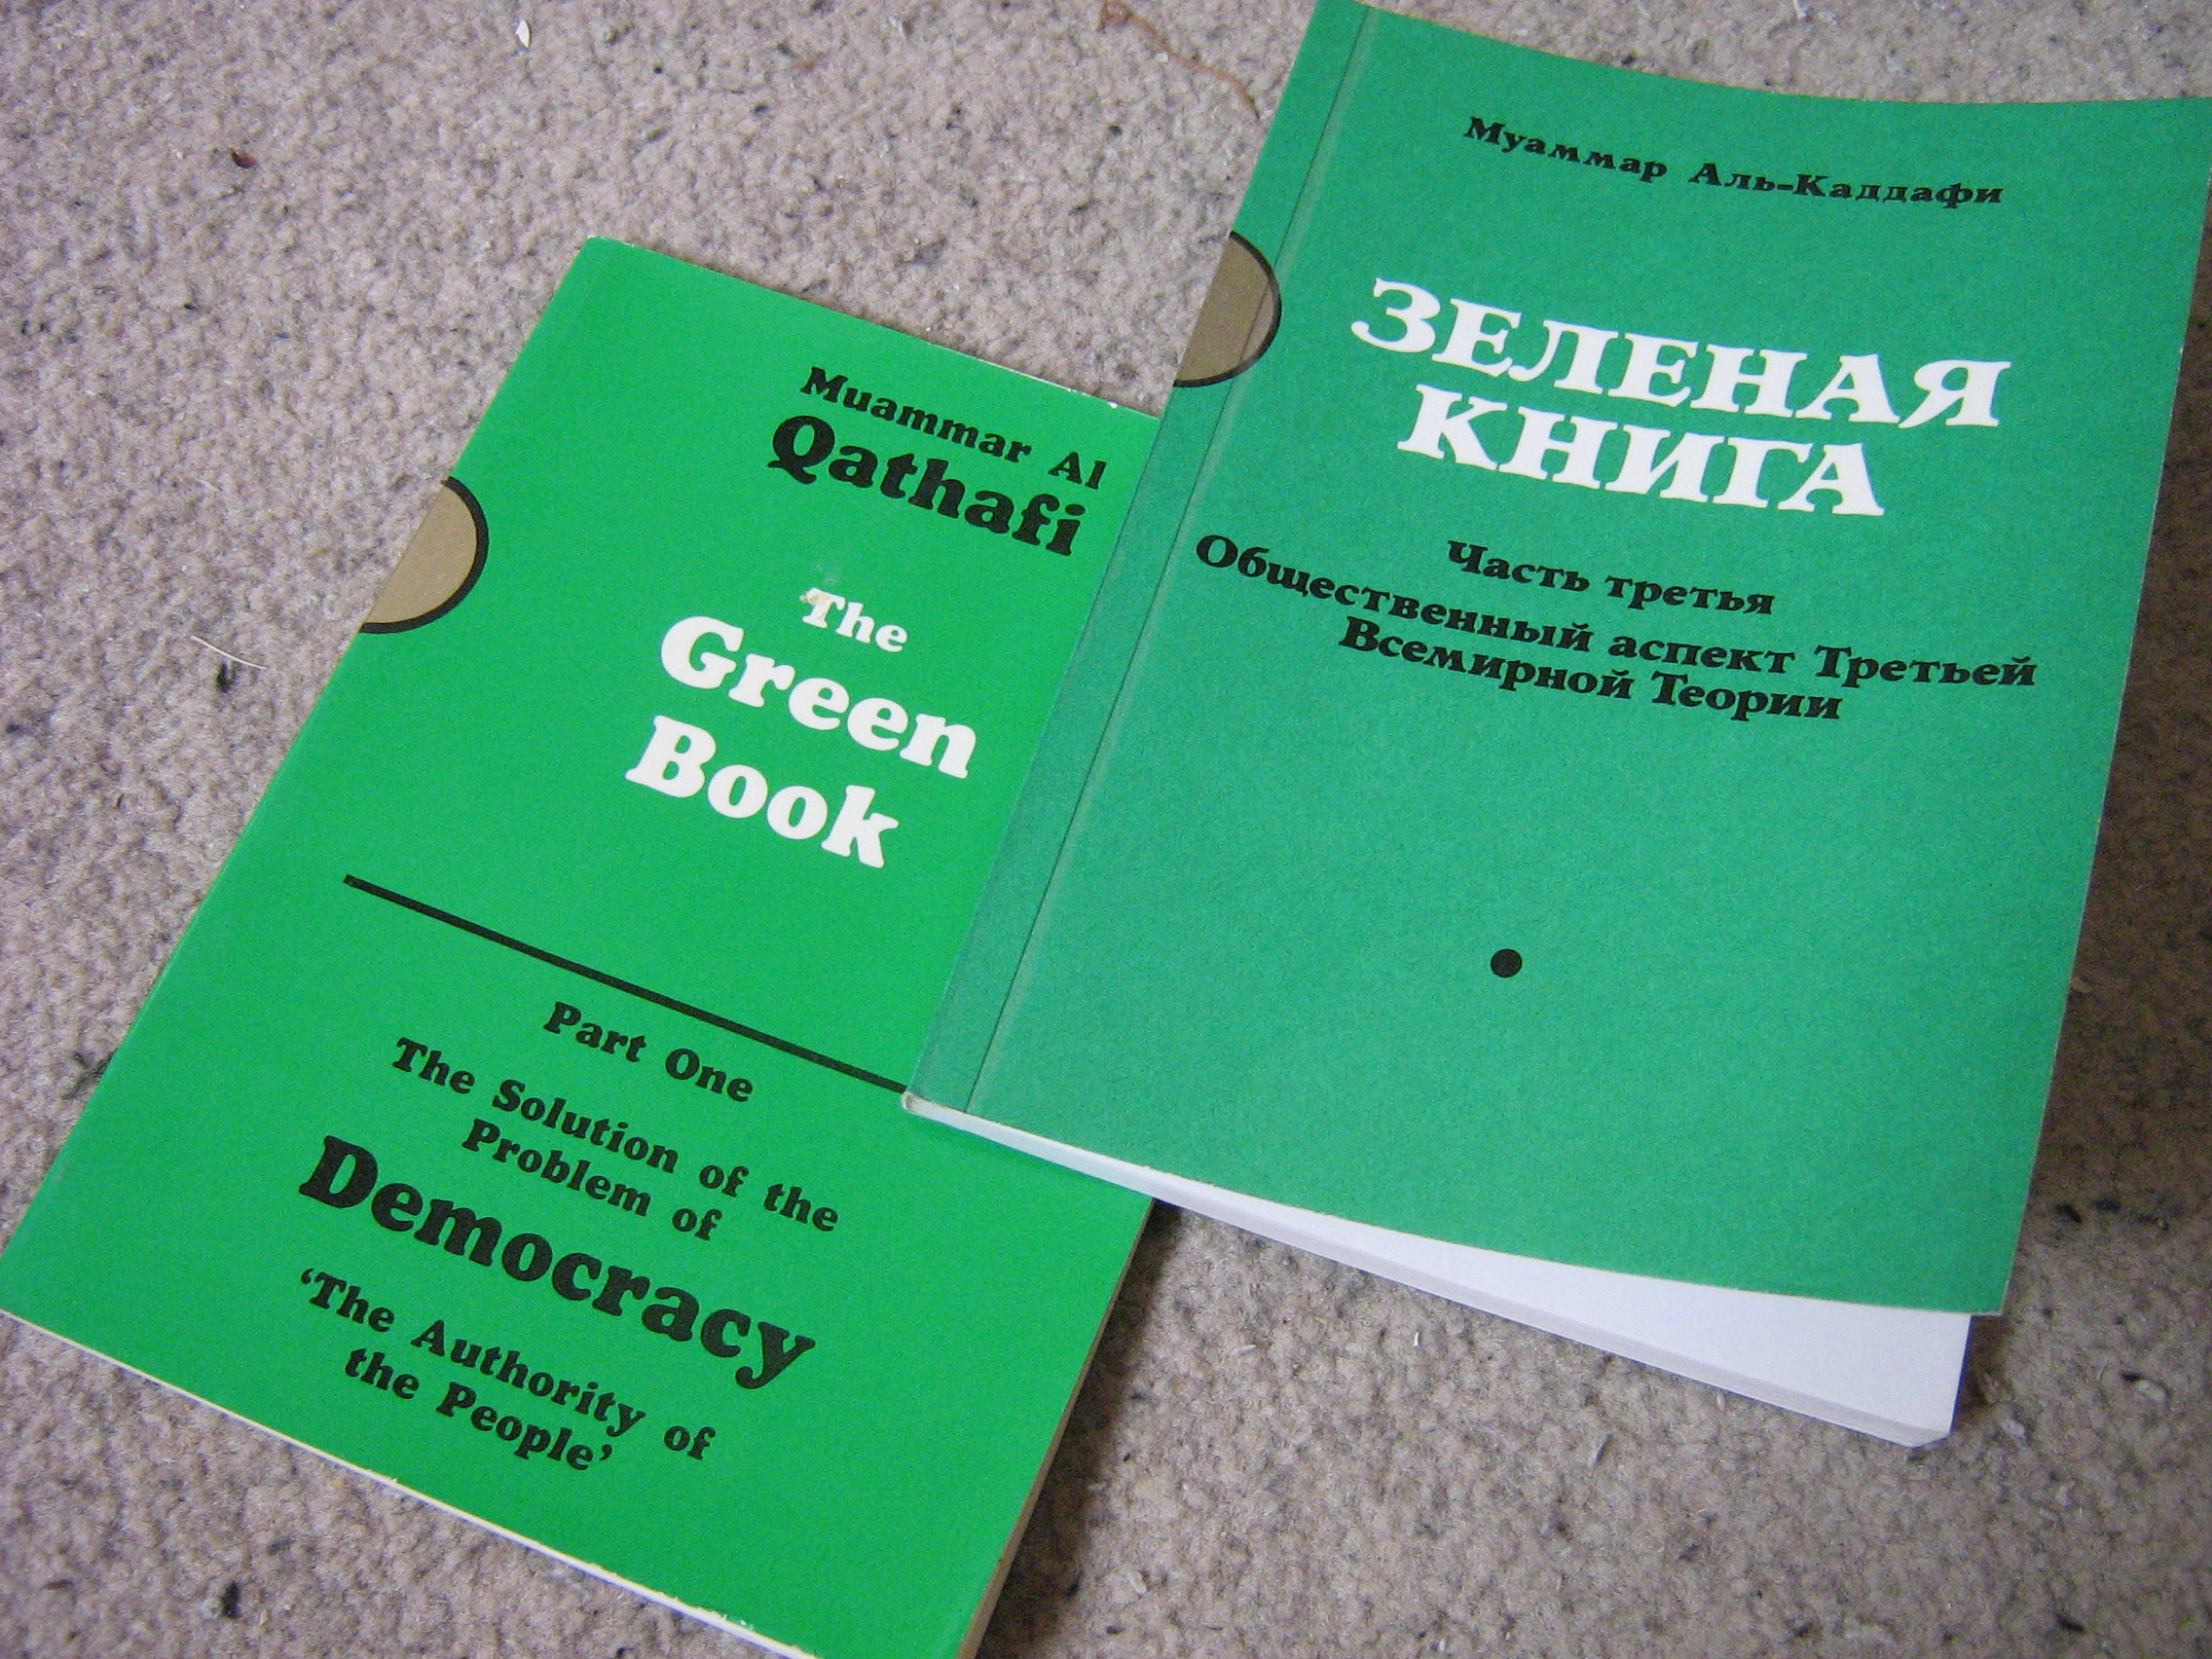 卡扎菲的《綠皮書》英文和俄文版